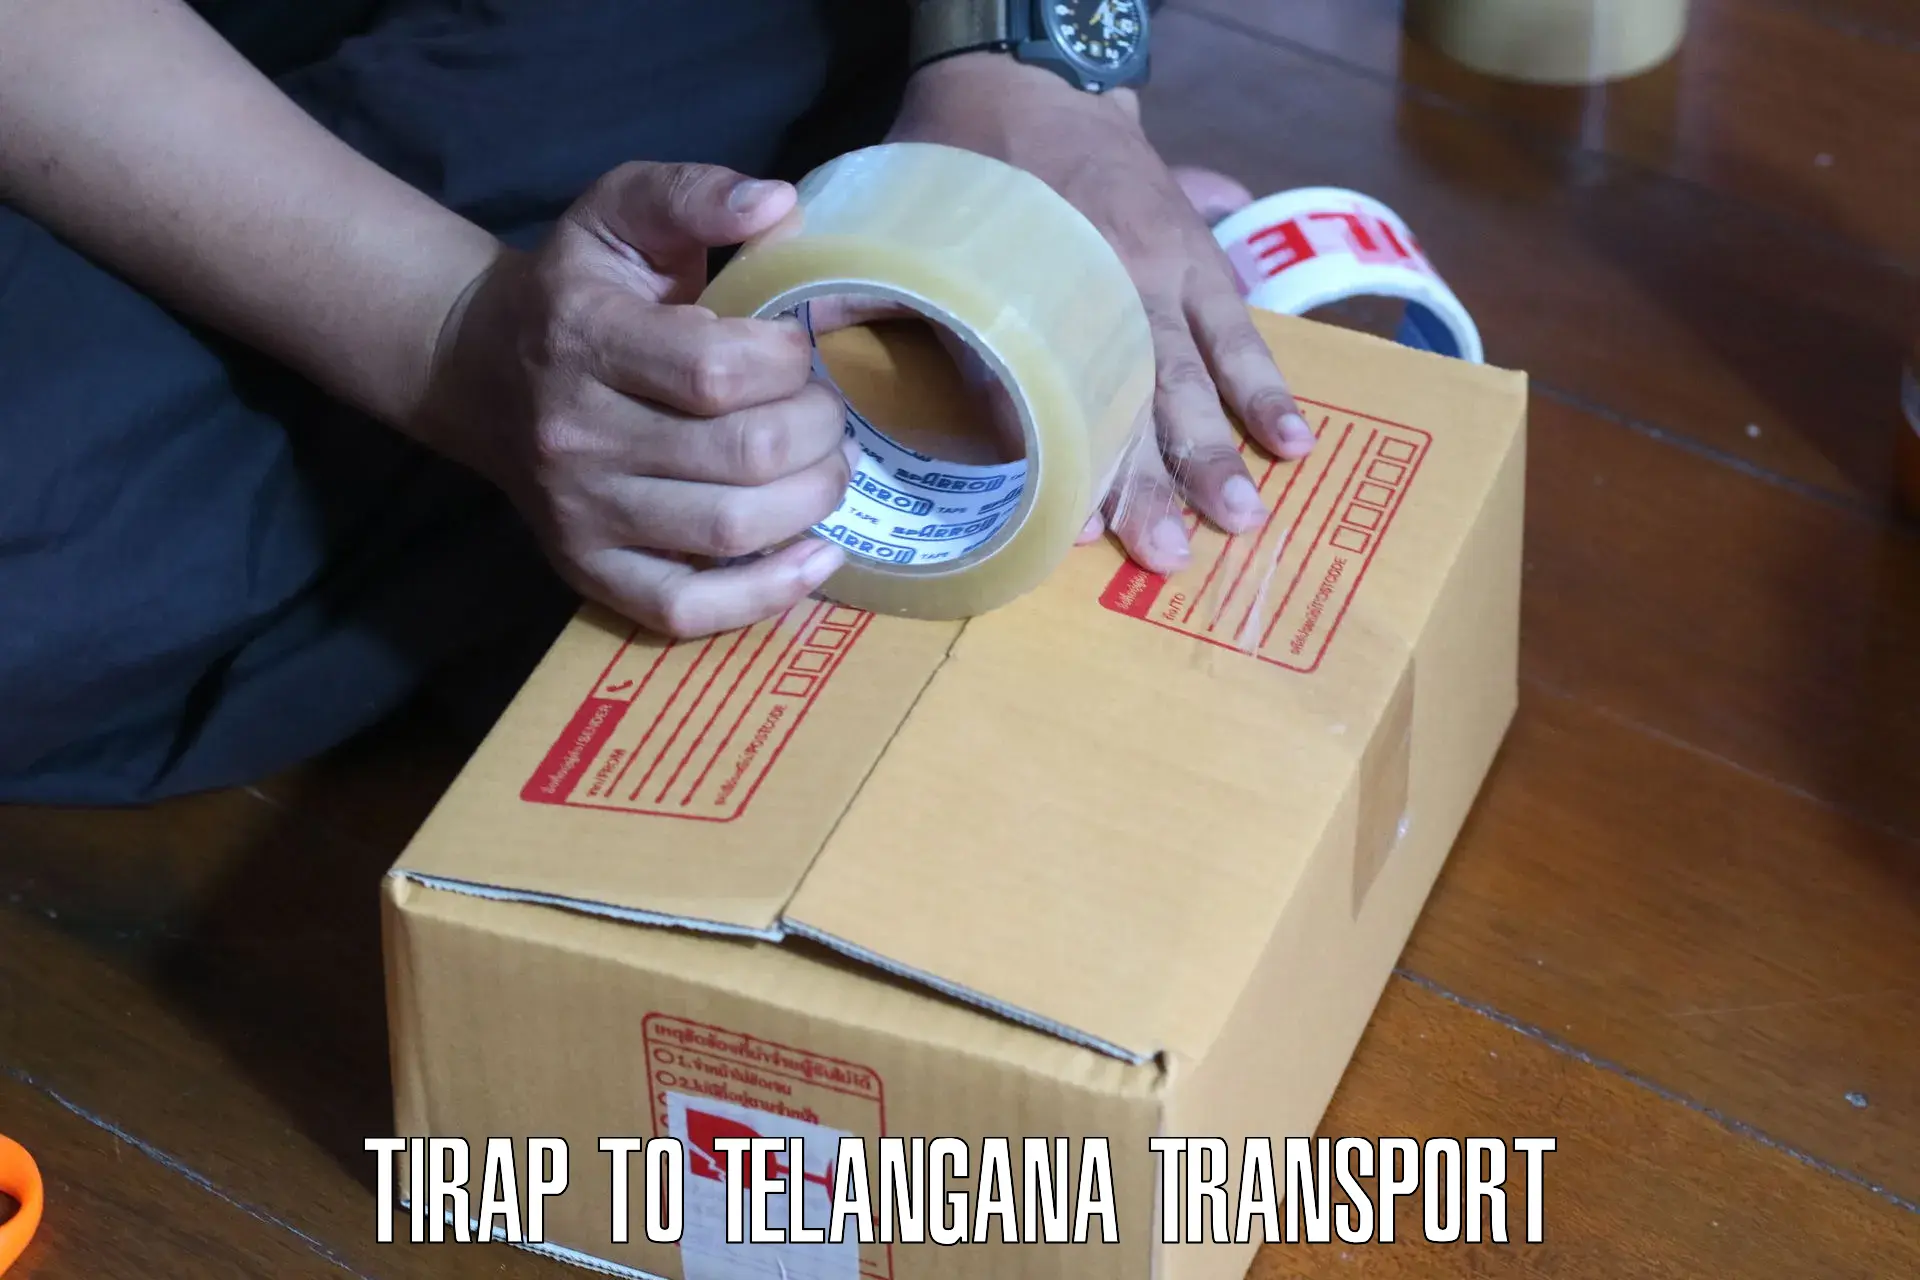 Shipping partner Tirap to Miryalaguda